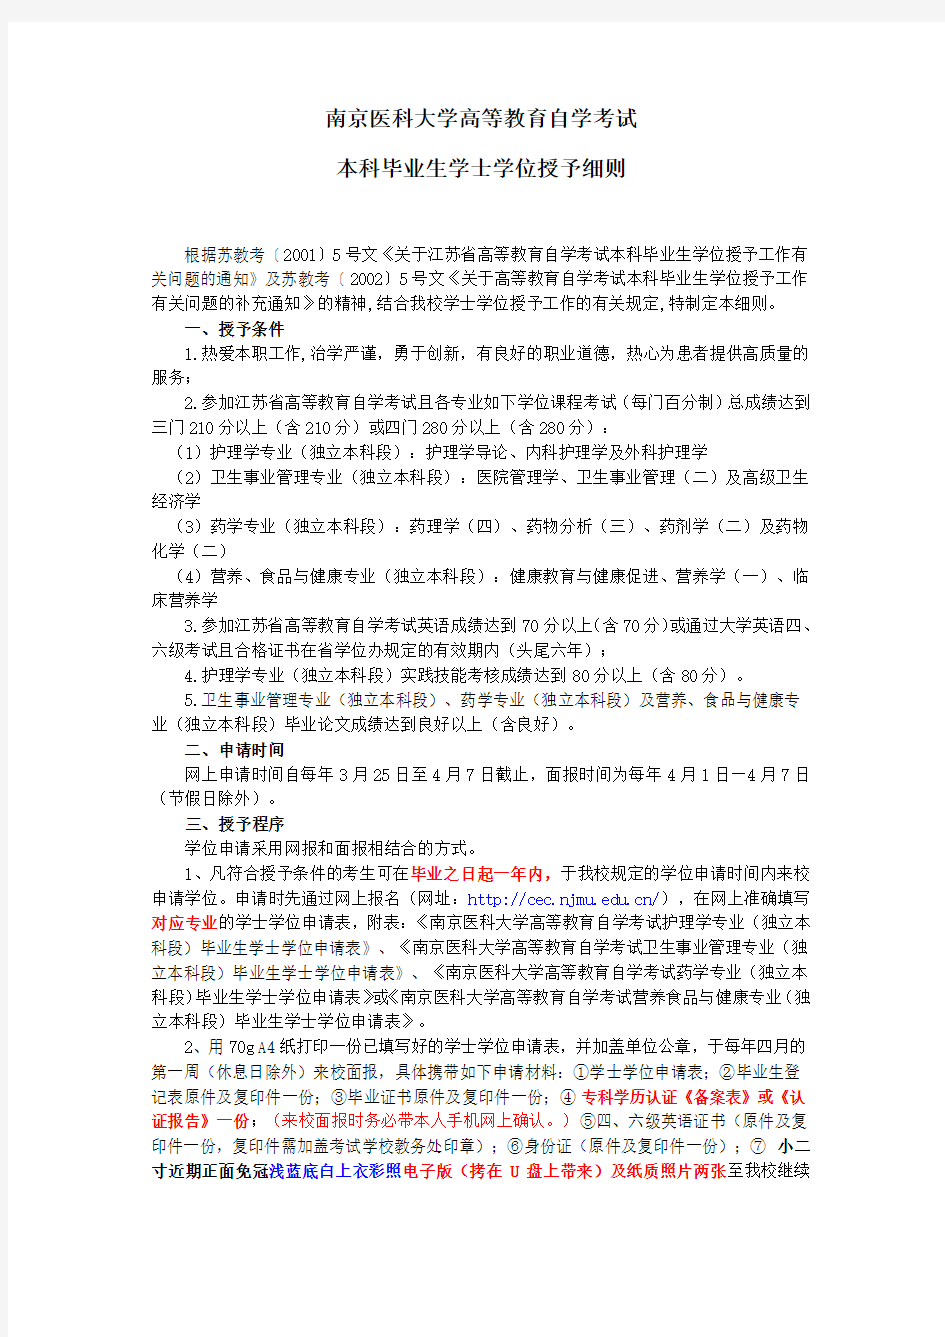 南京医科大学自学考试本科毕业生学士学位授予细则